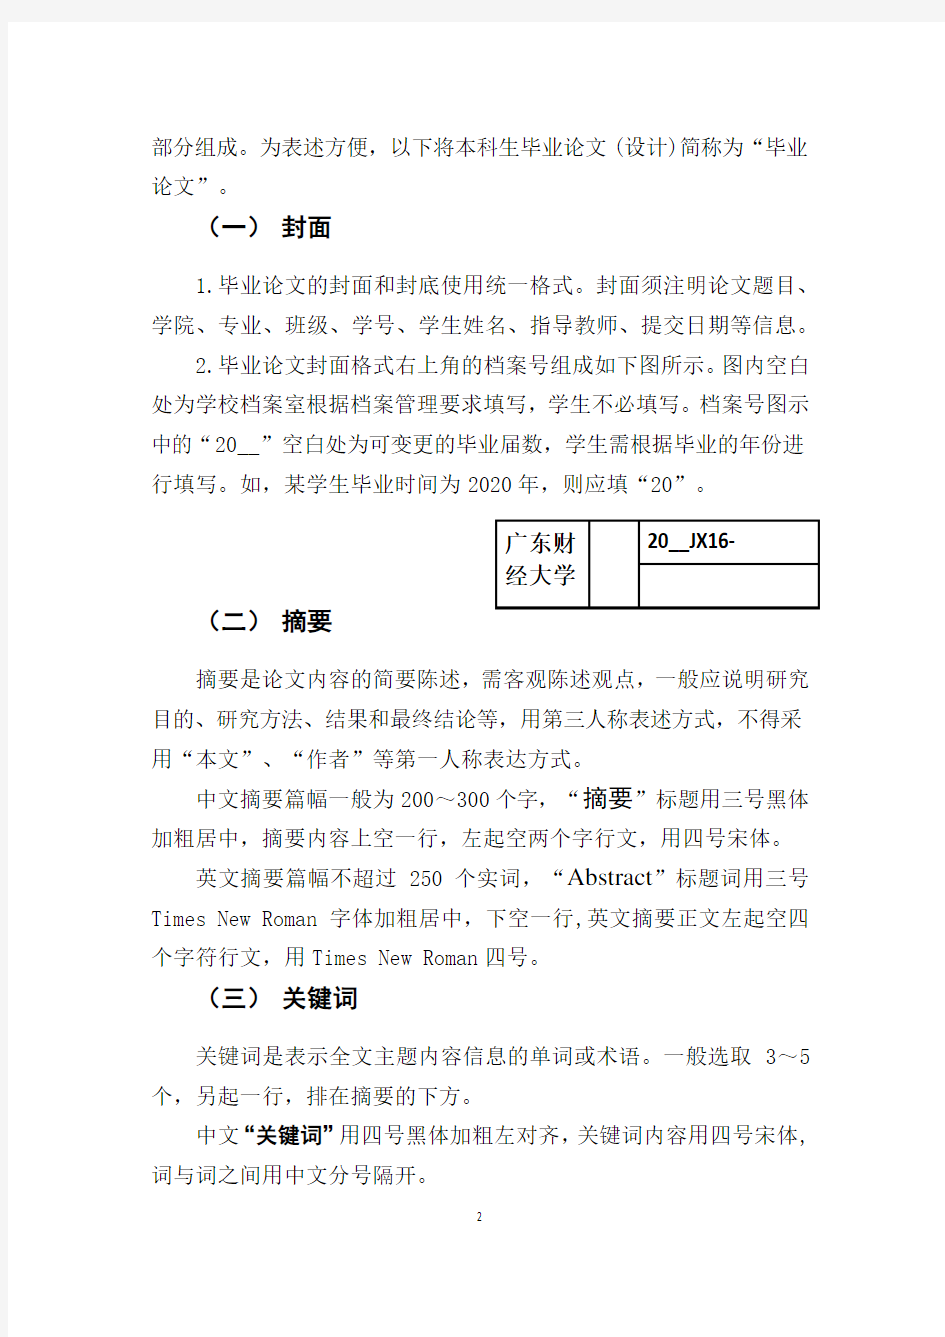 广东财经大学本科生毕业论文(设计)撰写规范(2020年修订)